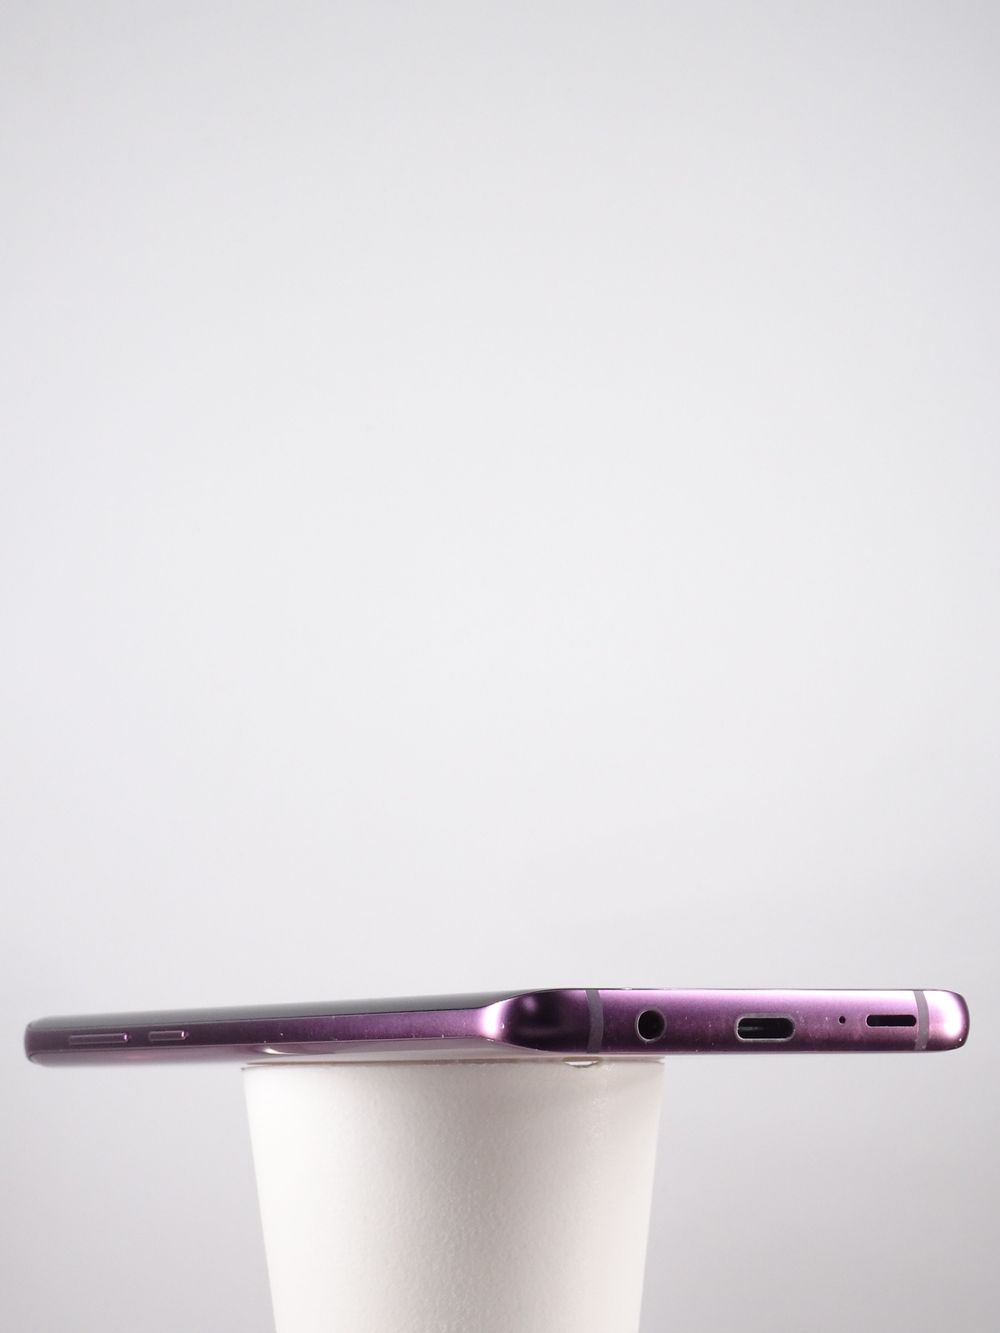 Мобилен телефон Samsung, Galaxy S9 Plus, 64 GB, Purple,  Като нов